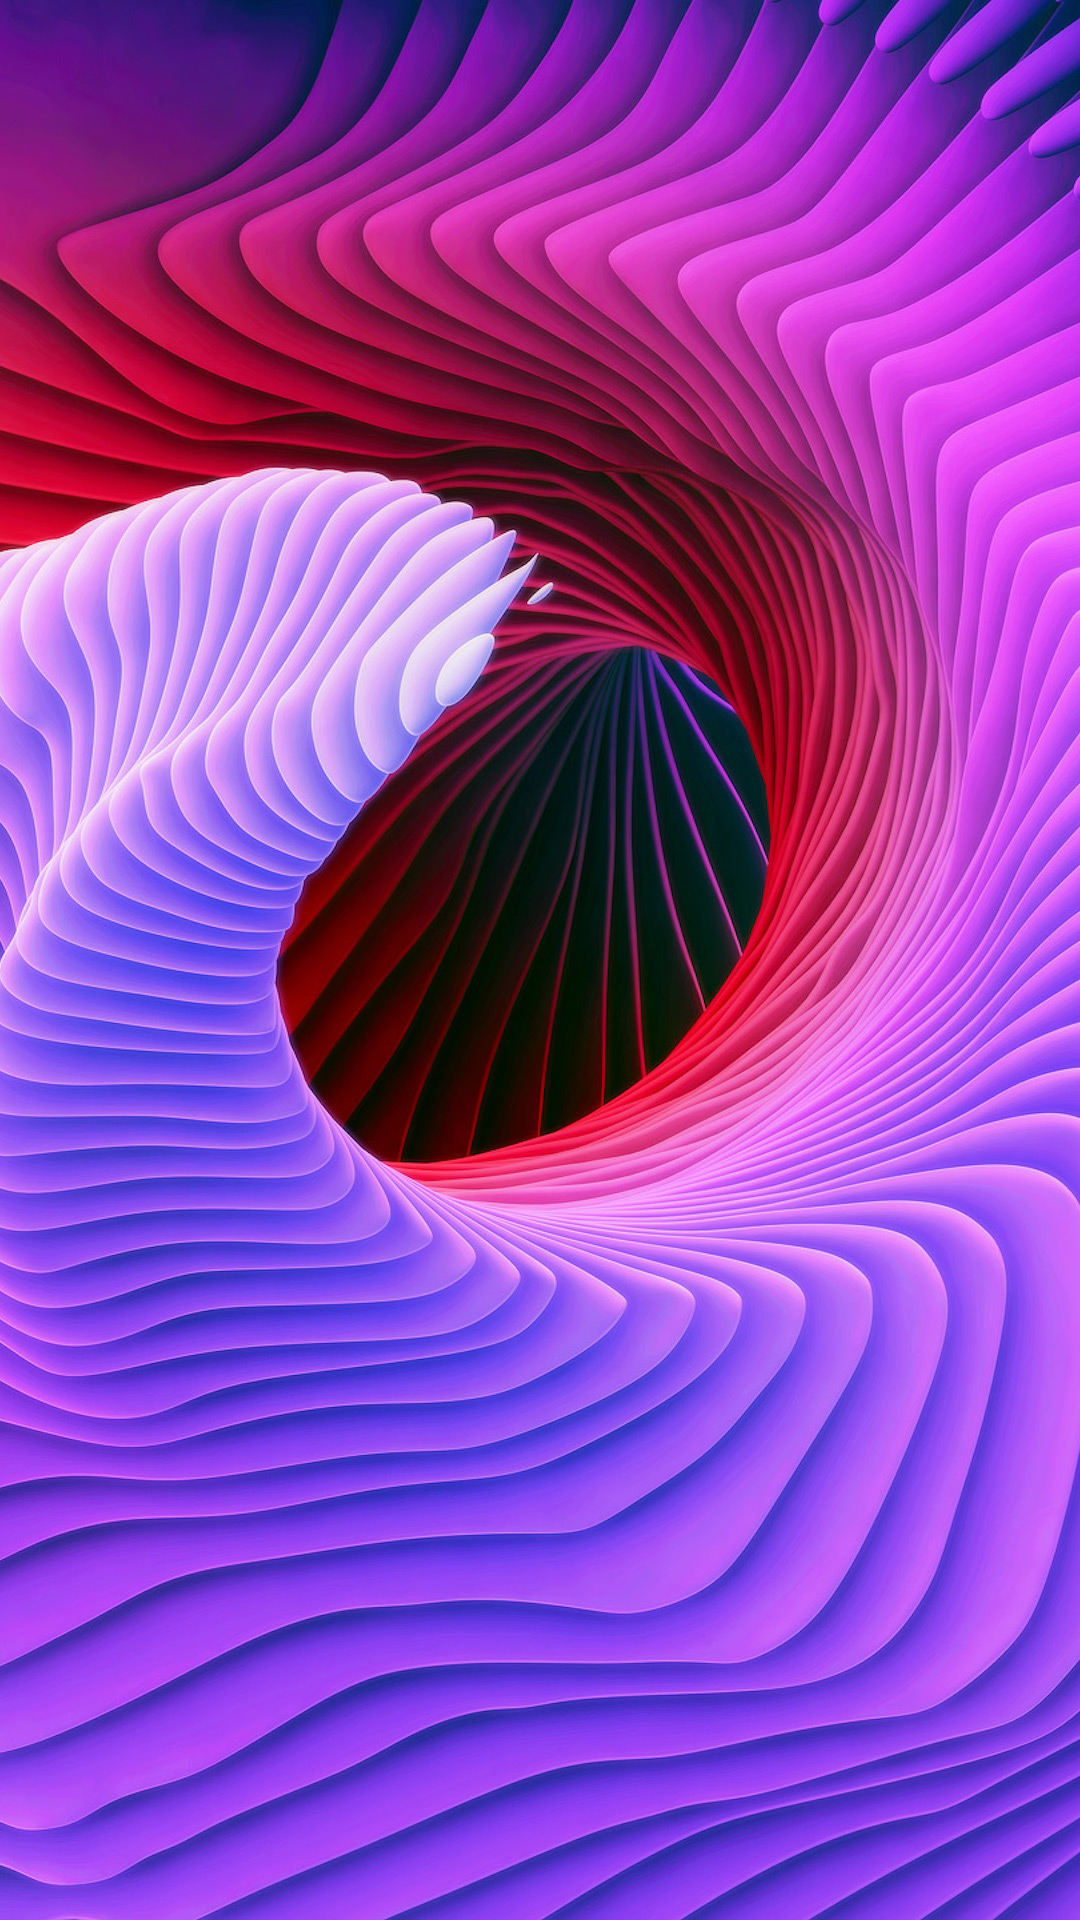 descarga de fondos de pantalla de samsung,púrpura,violeta,rosado,arte fractal,modelo